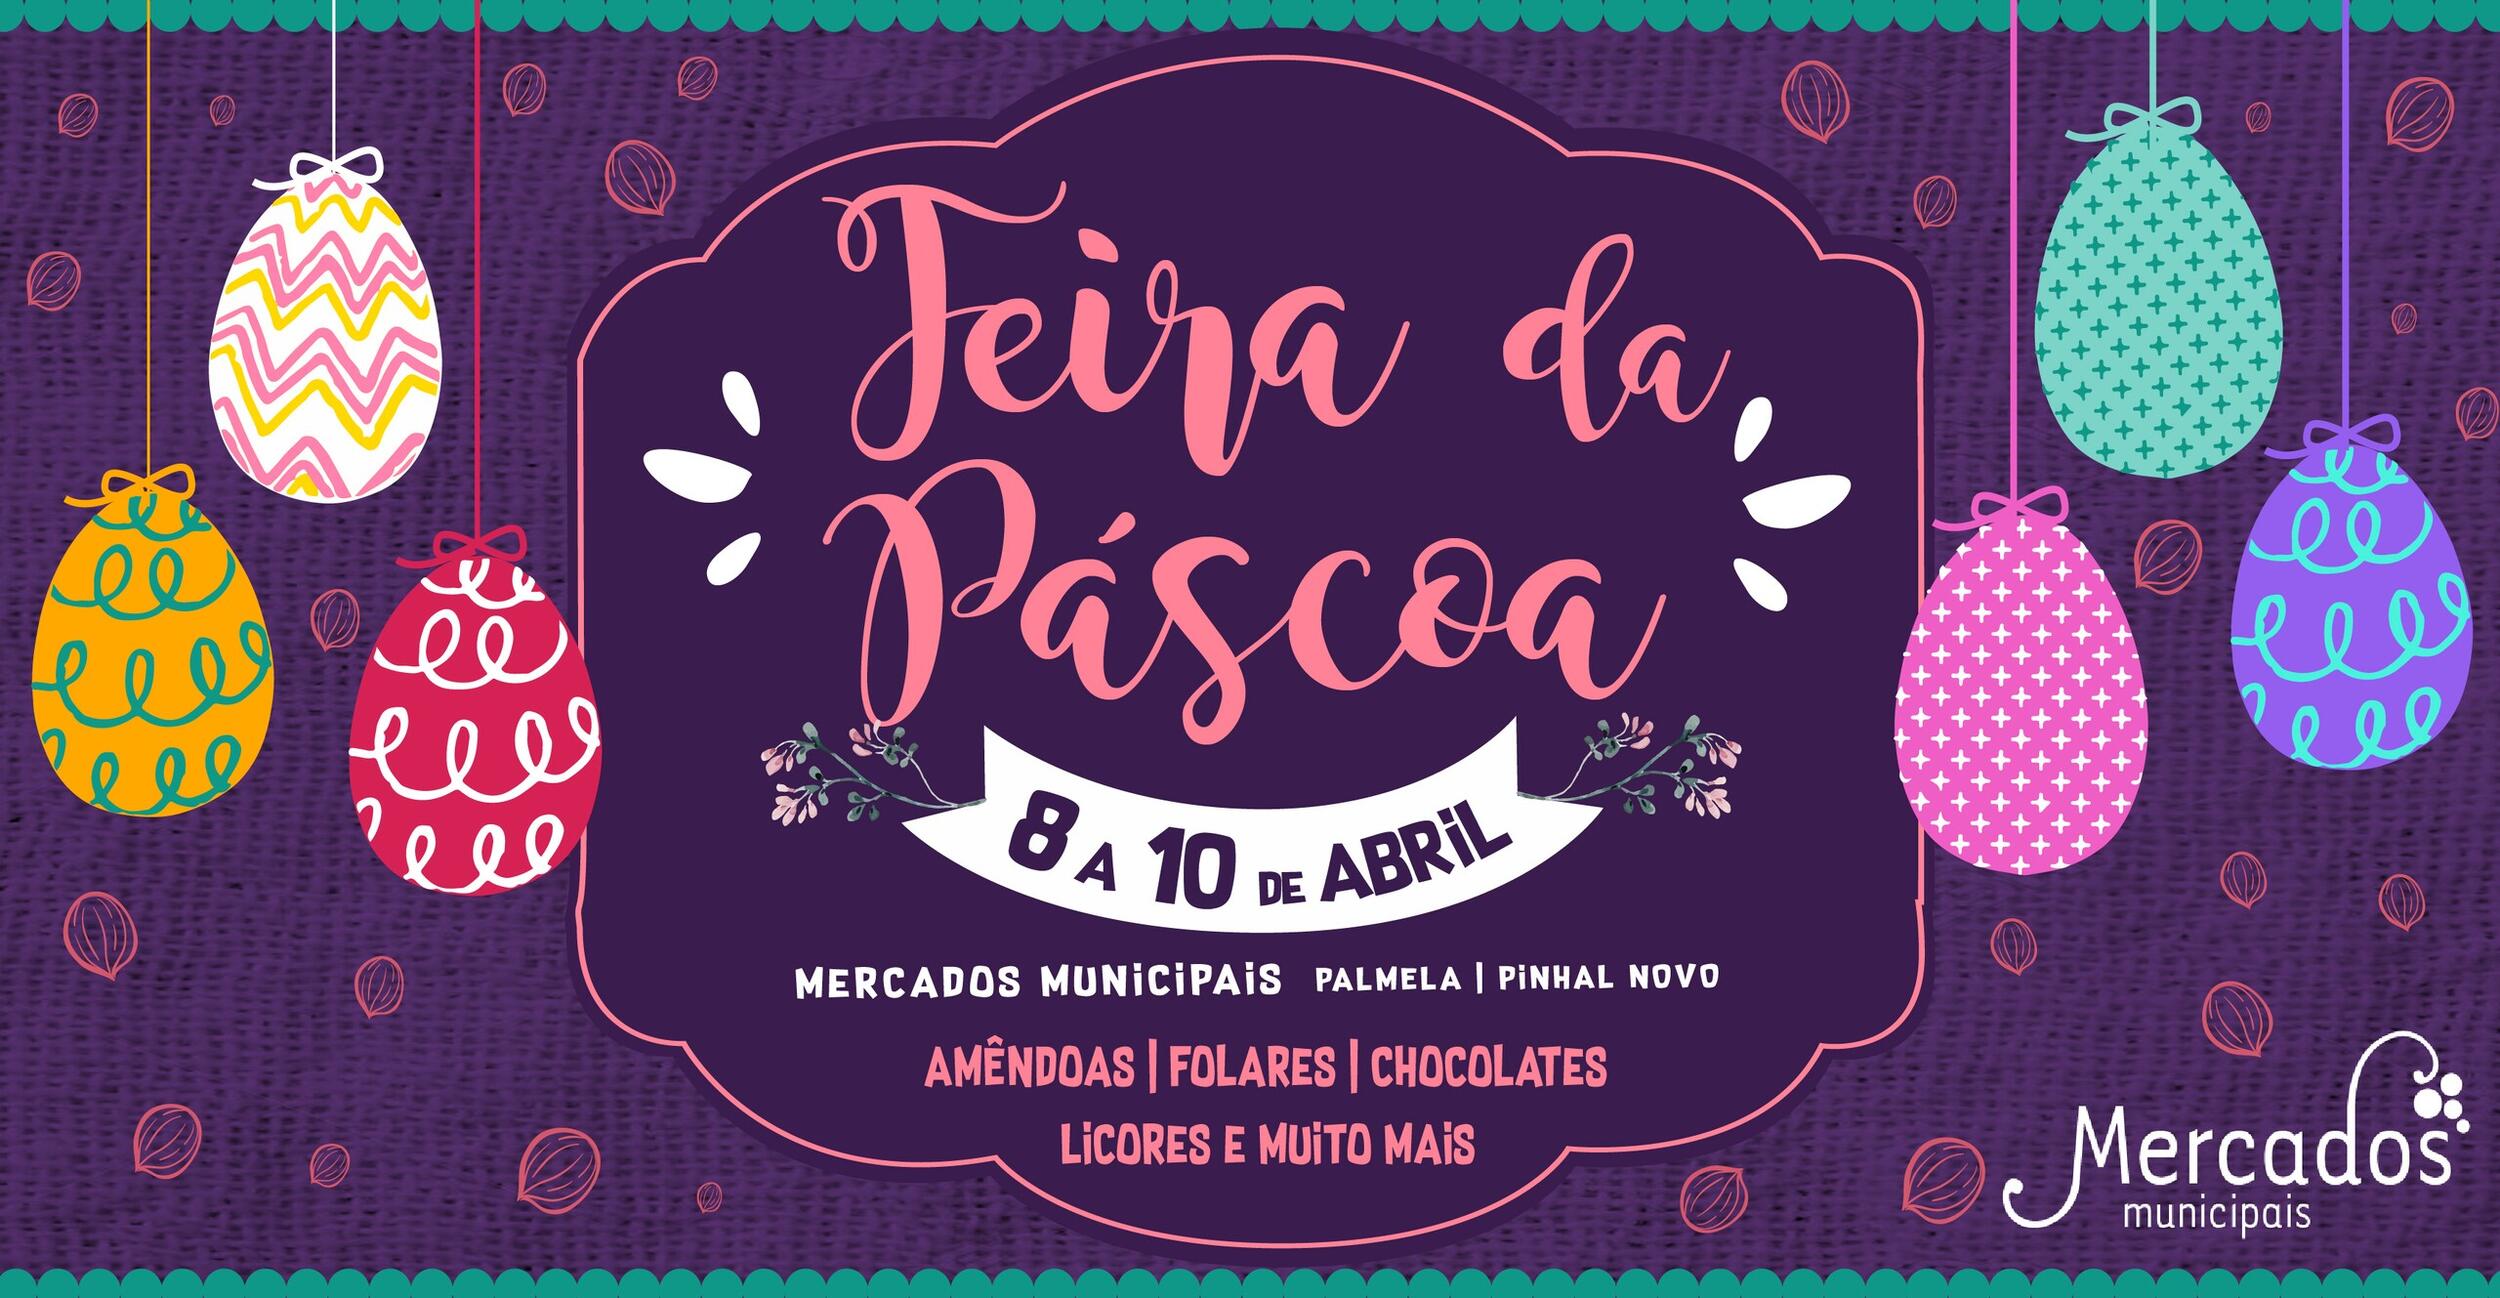 Festeje a Páscoa nos Mercados Municipais de Palmela e Pinhal Novo!